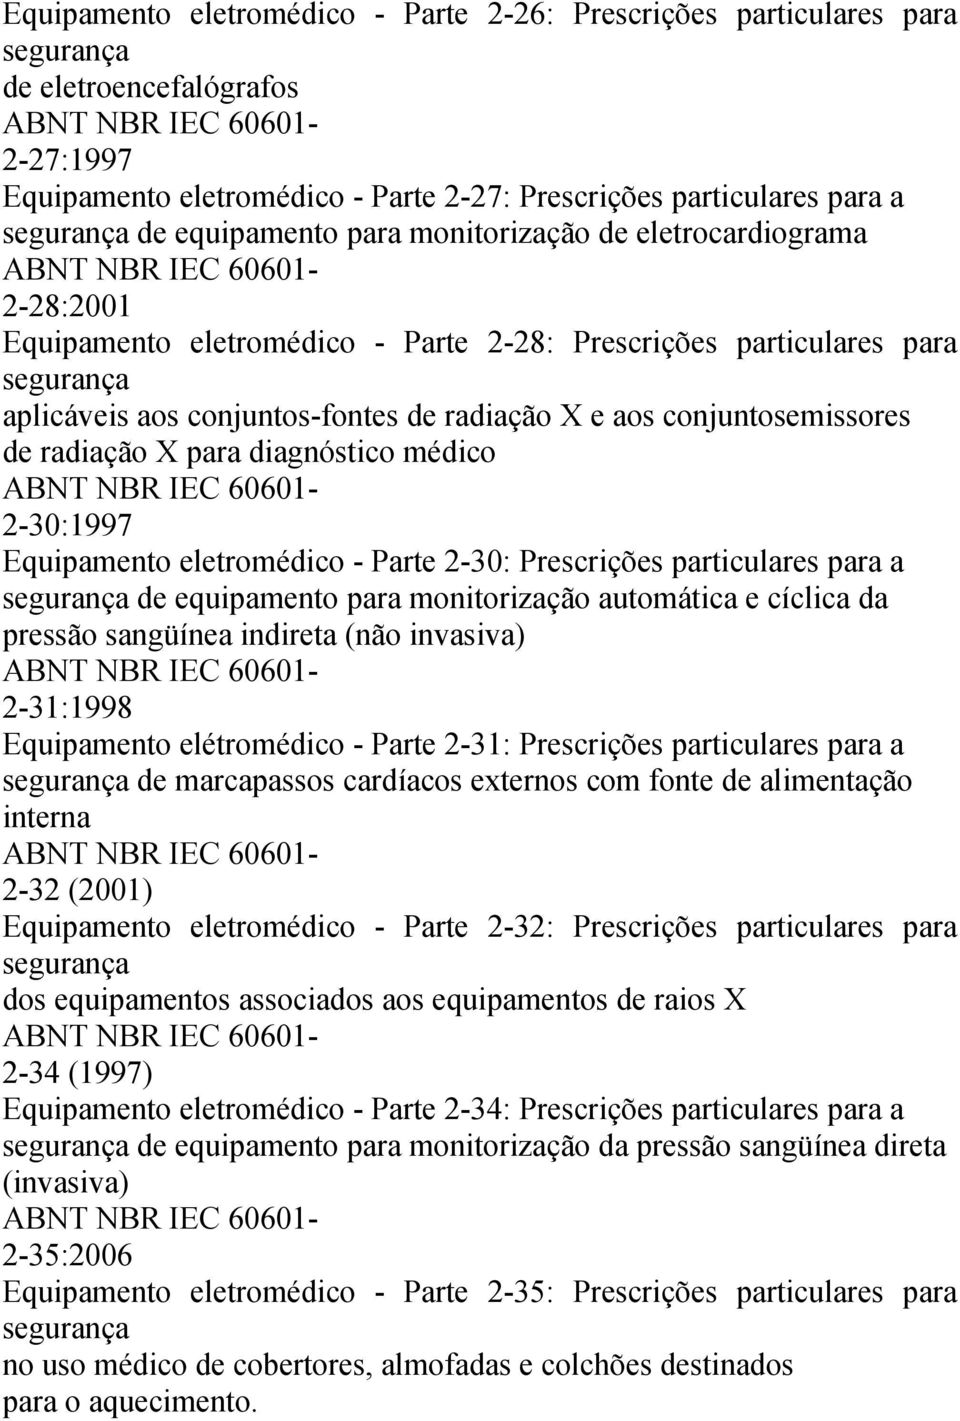 para diagnóstico médico 2-30:1997 Equipamento eletromédico - Parte 2-30: Prescrições particulares para a de equipamento para monitorização automática e cíclica da pressão sangüínea indireta (não